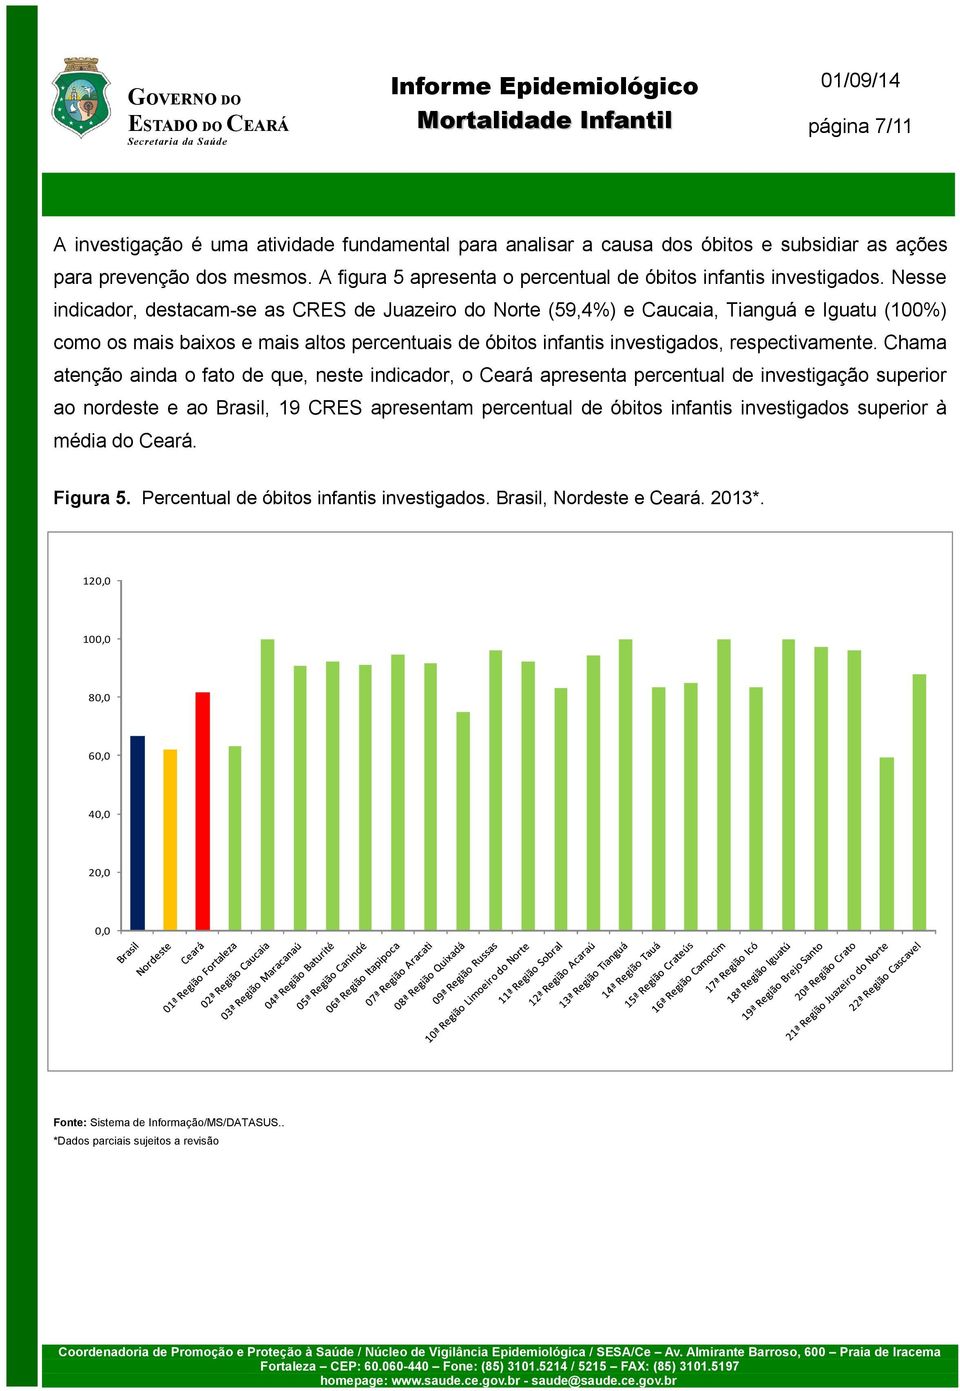 Nesse indicador, destacam-se as CRES de Juazeiro do Norte (59,4%) e Caucaia, Tianguá e Iguatu (100%) como os mais baixos e mais altos percentuais de óbitos infantis investigados, respectivamente.